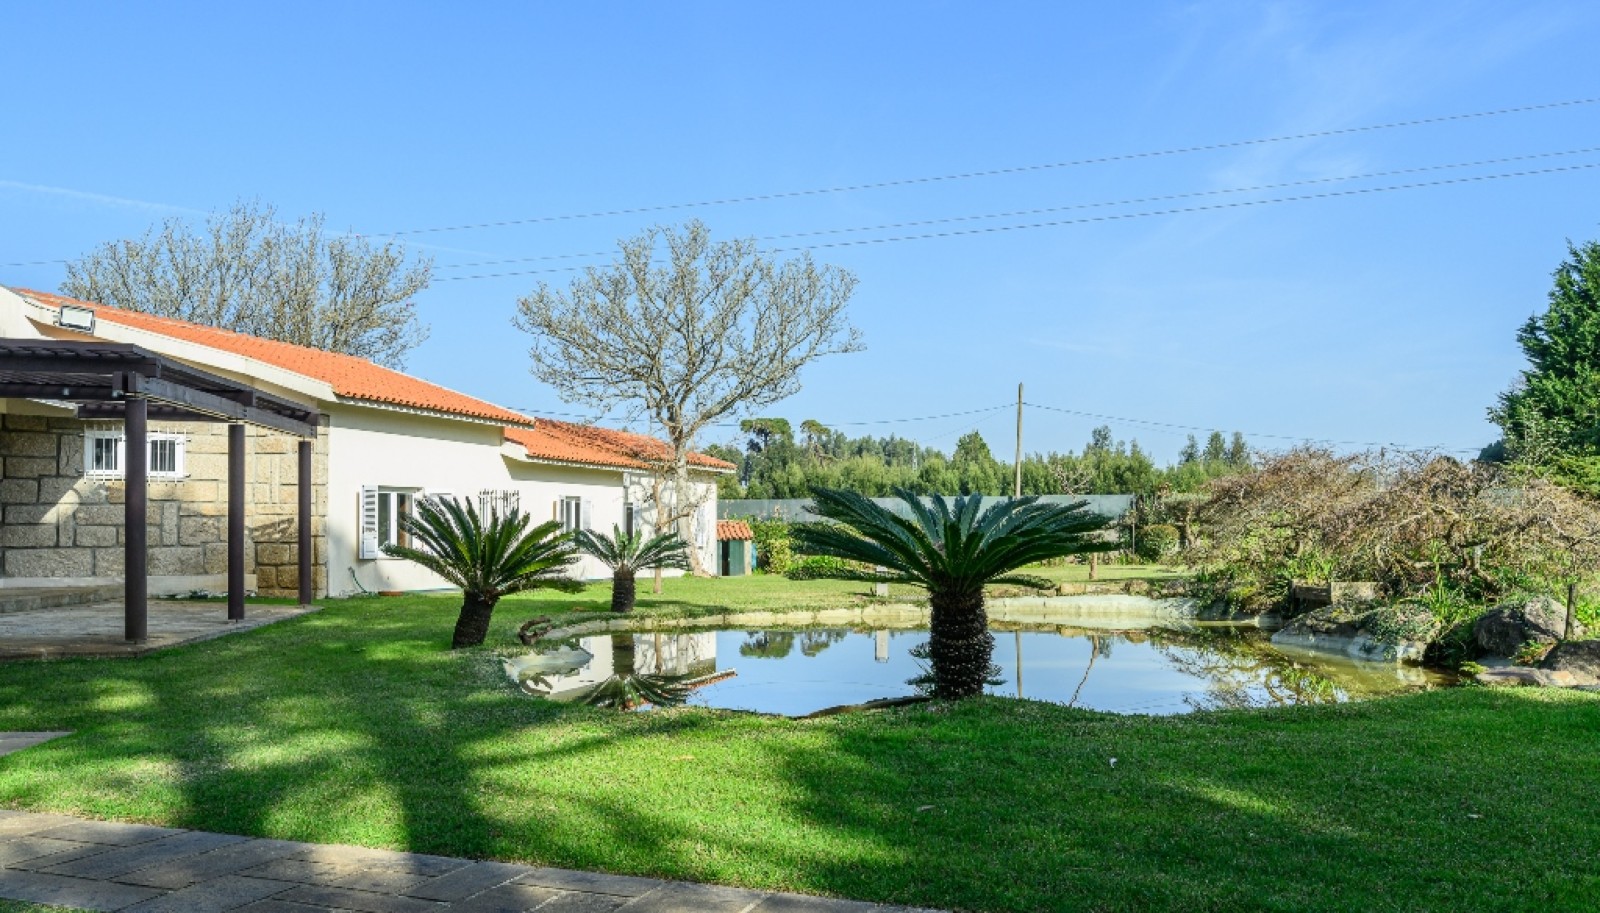 Moradia V5 com jardim e piscina, à venda, em Vila do Conde, Portugal_251041